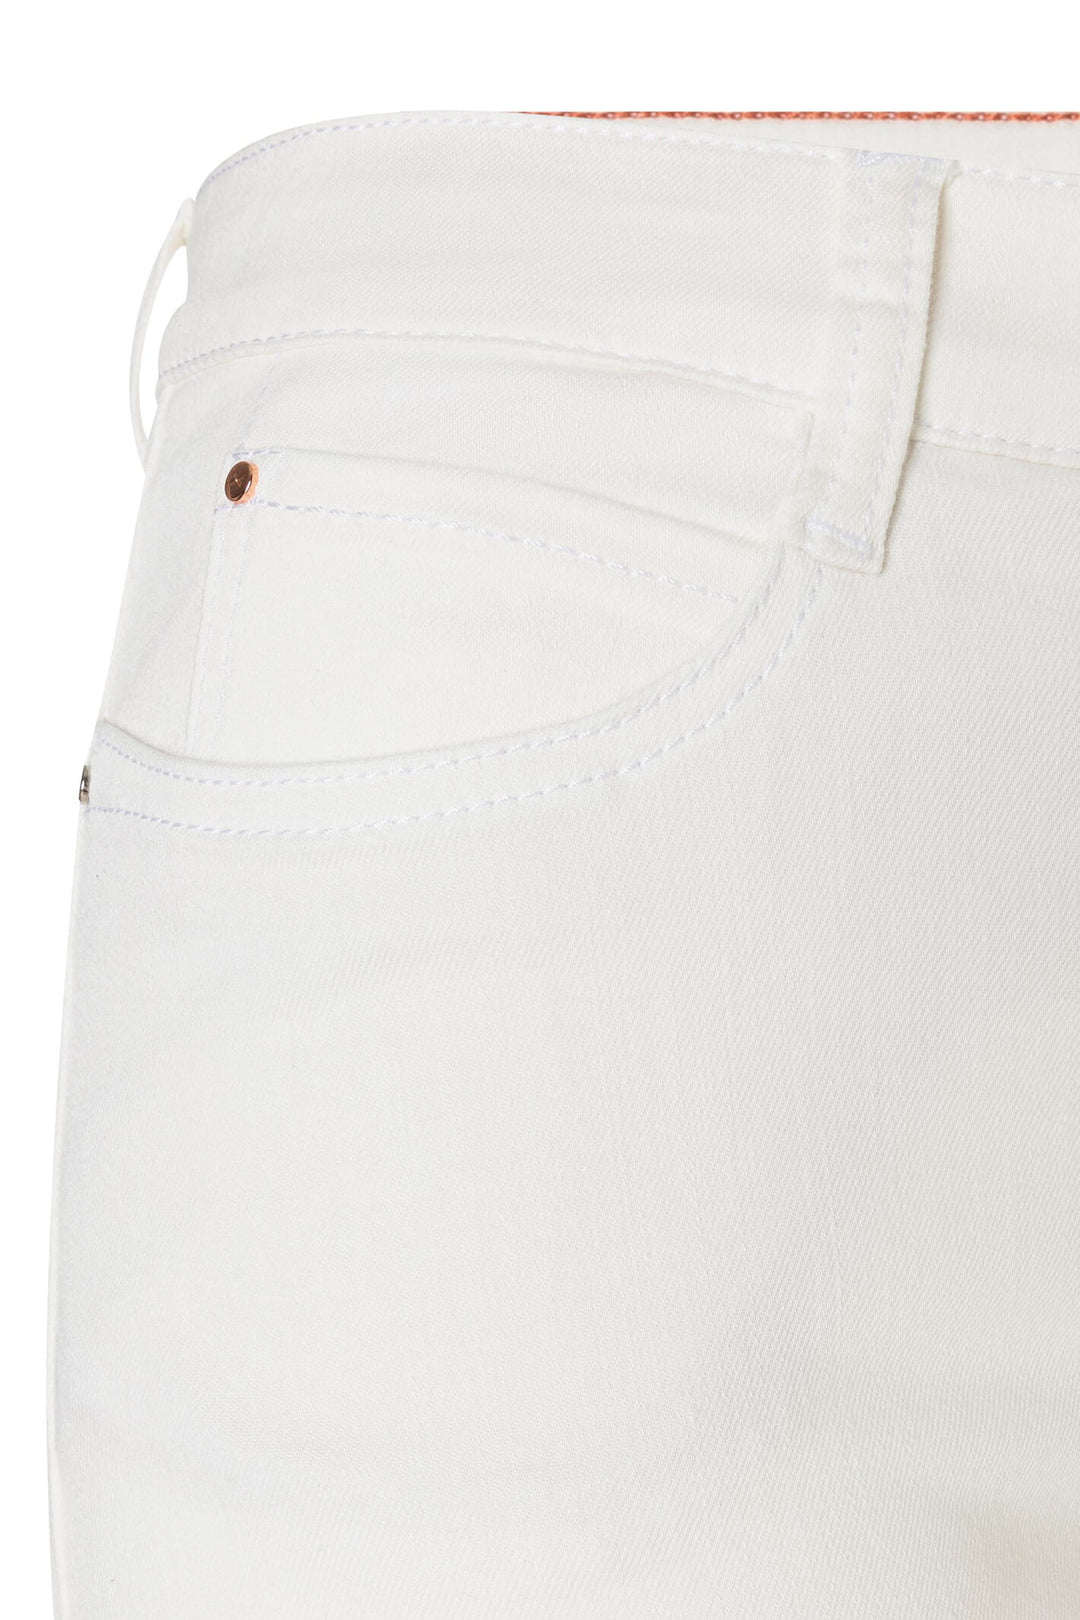 Mac Dream Wide 5439-90-0358 White Denim Mega Flex Jeans - Olivia Grace Fashion